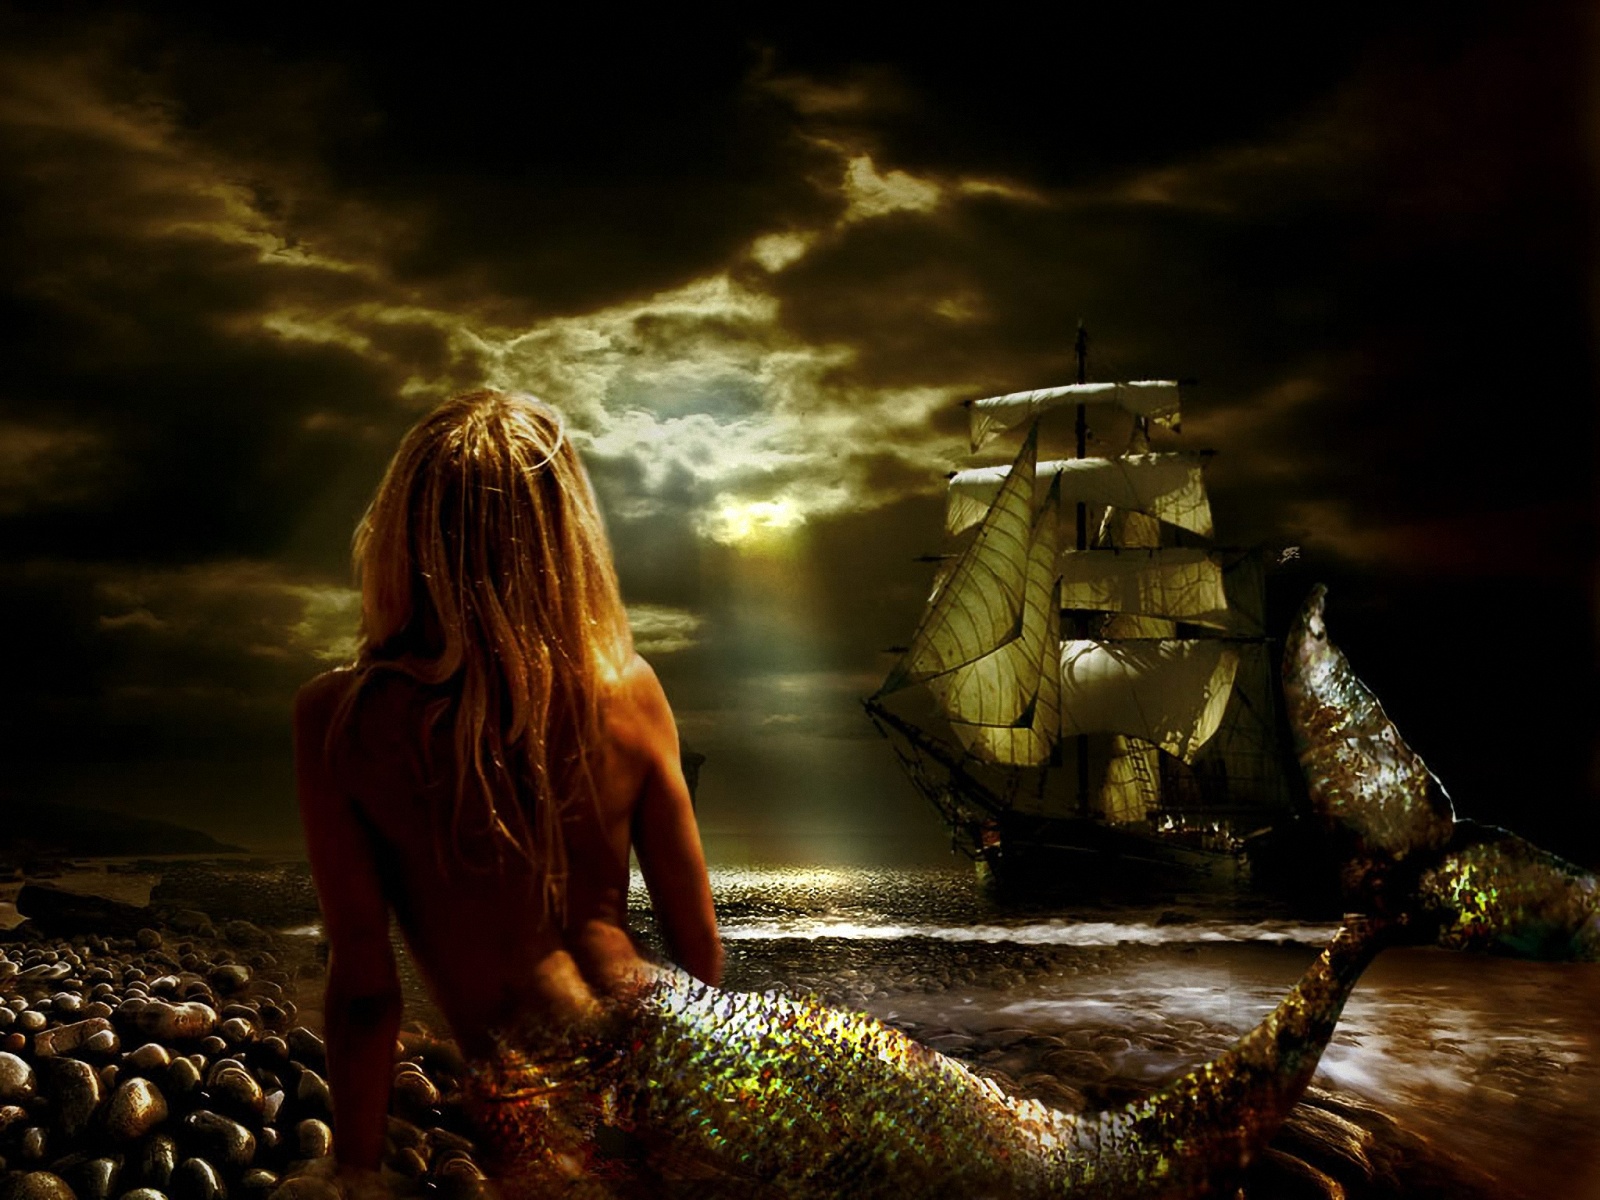 Bella+sirena+en+las+rocas,+observando+un+barco+en+el+mar